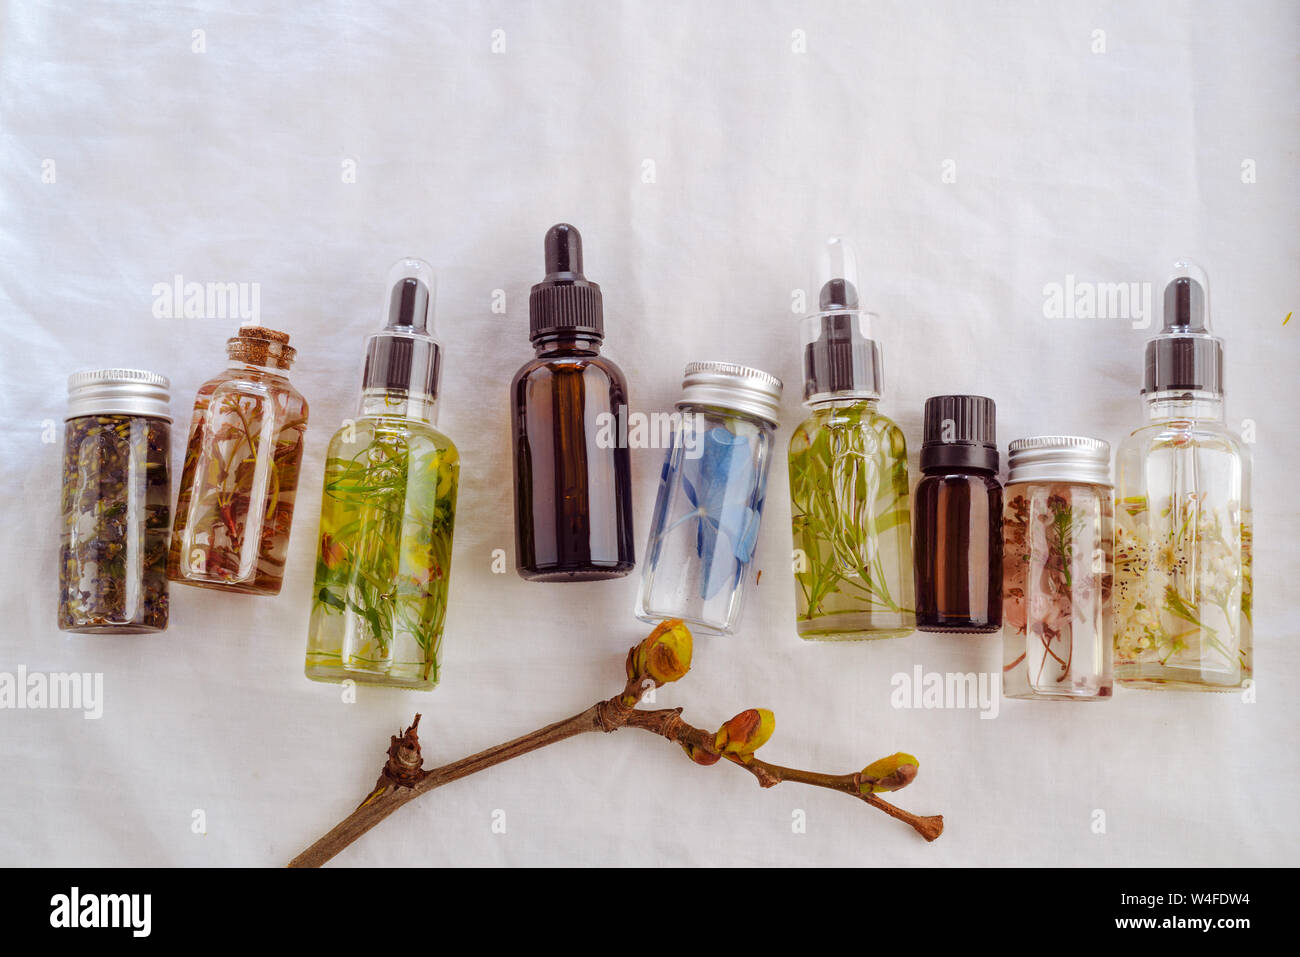 Transparente Flaschen des wesentlichen Öls mit frischen Kräutern und Blumen, natürliche Behandlung für Massage, Aromatherapie oder spa-Konzept. Natürliche Medikamente. Stockfoto